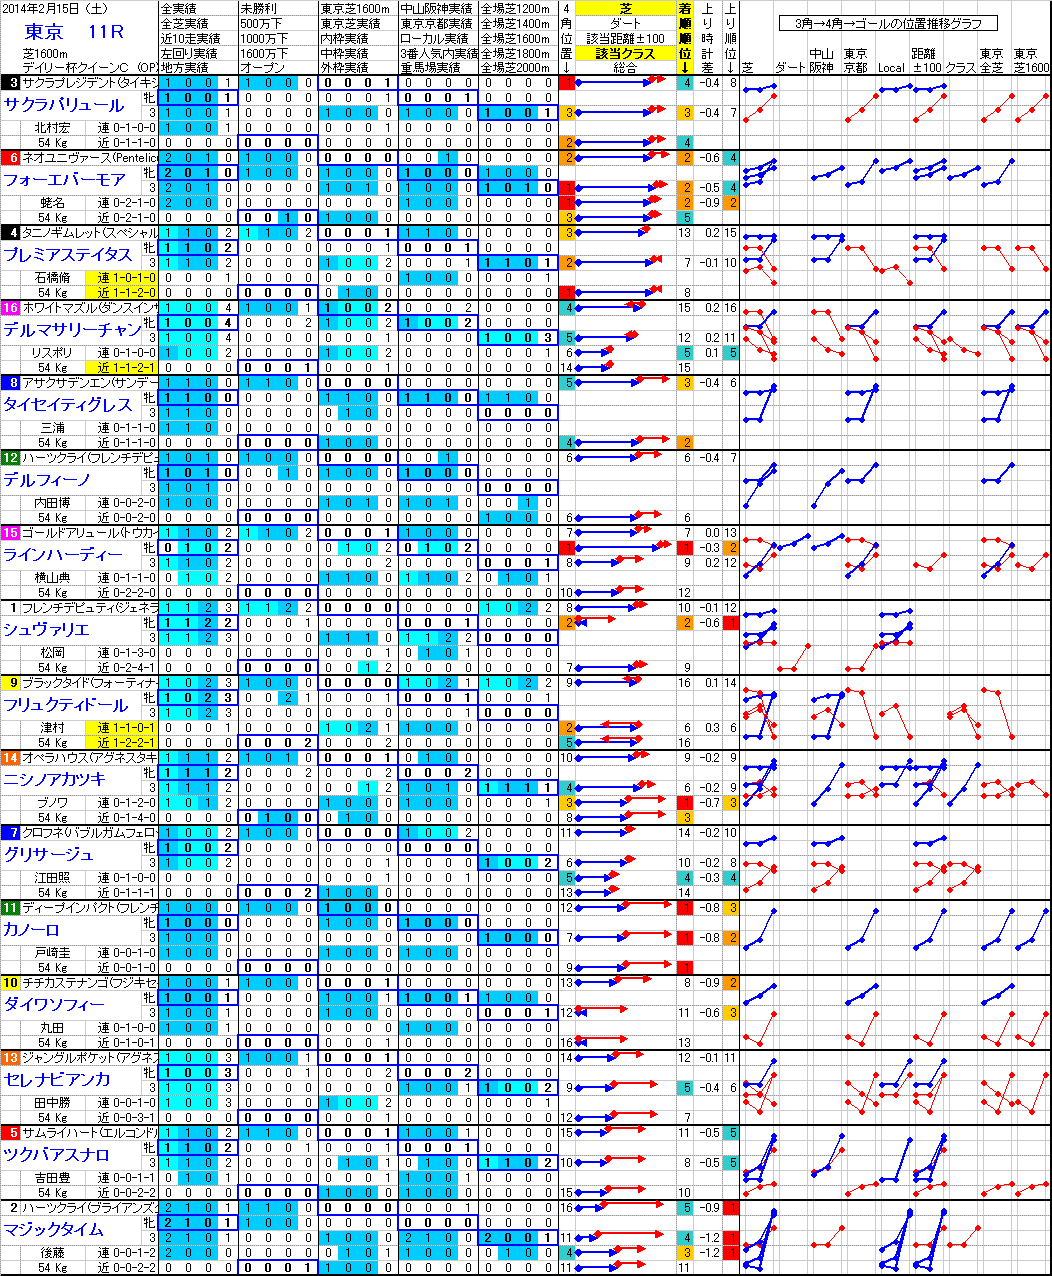 東京 2014年2月15日 （土） ： 11R － 分析データ